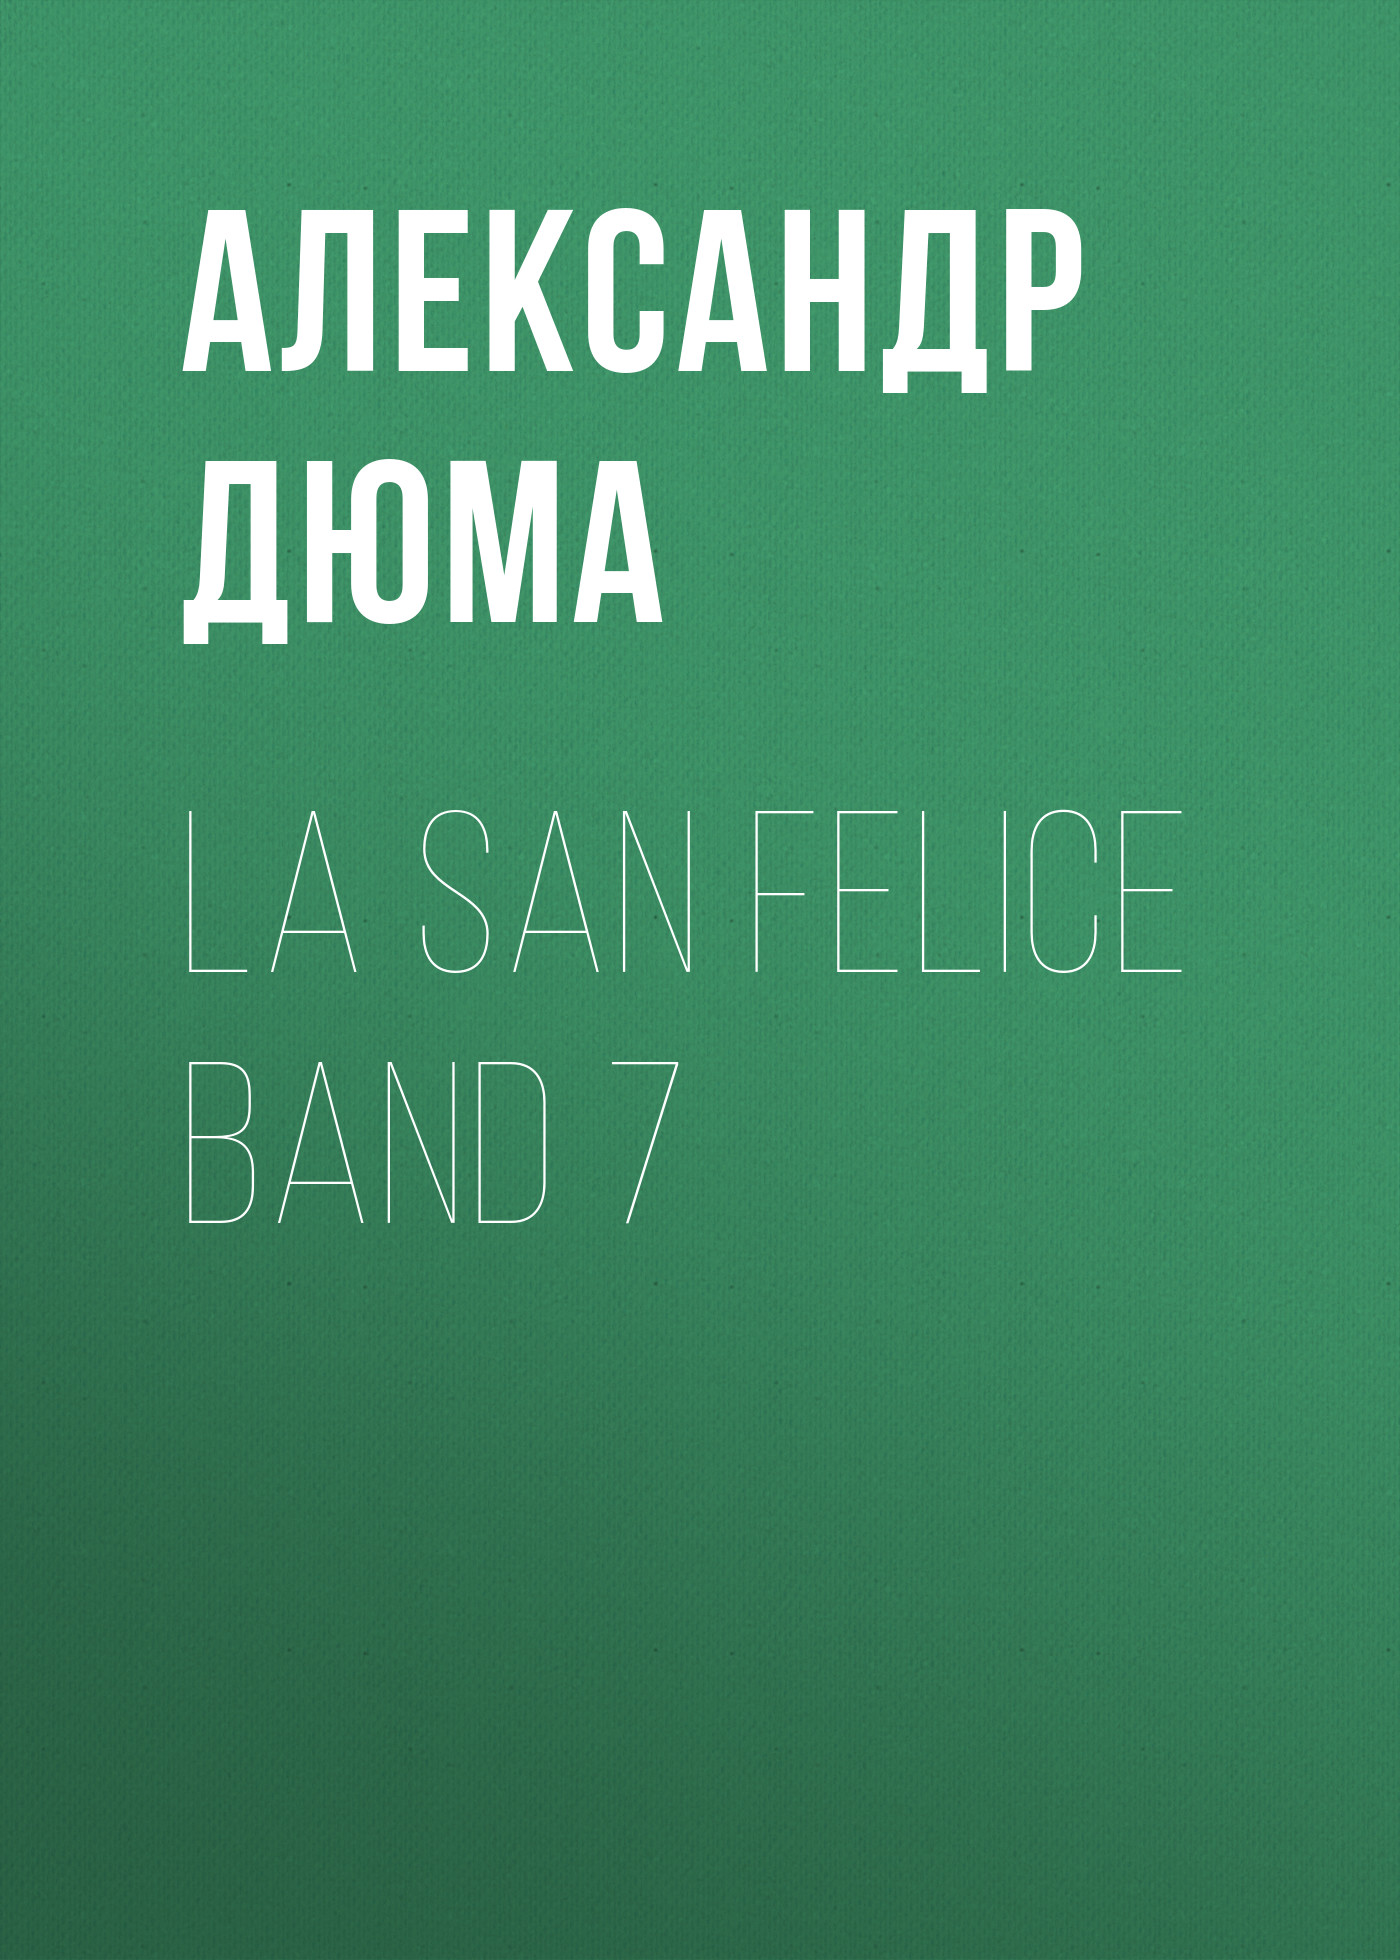 Книга La San Felice Band 7 из серии , созданная Alexandre Dumas der Ältere, может относится к жанру Зарубежная классика. Стоимость электронной книги La San Felice Band 7 с идентификатором 48632812 составляет 0 руб.